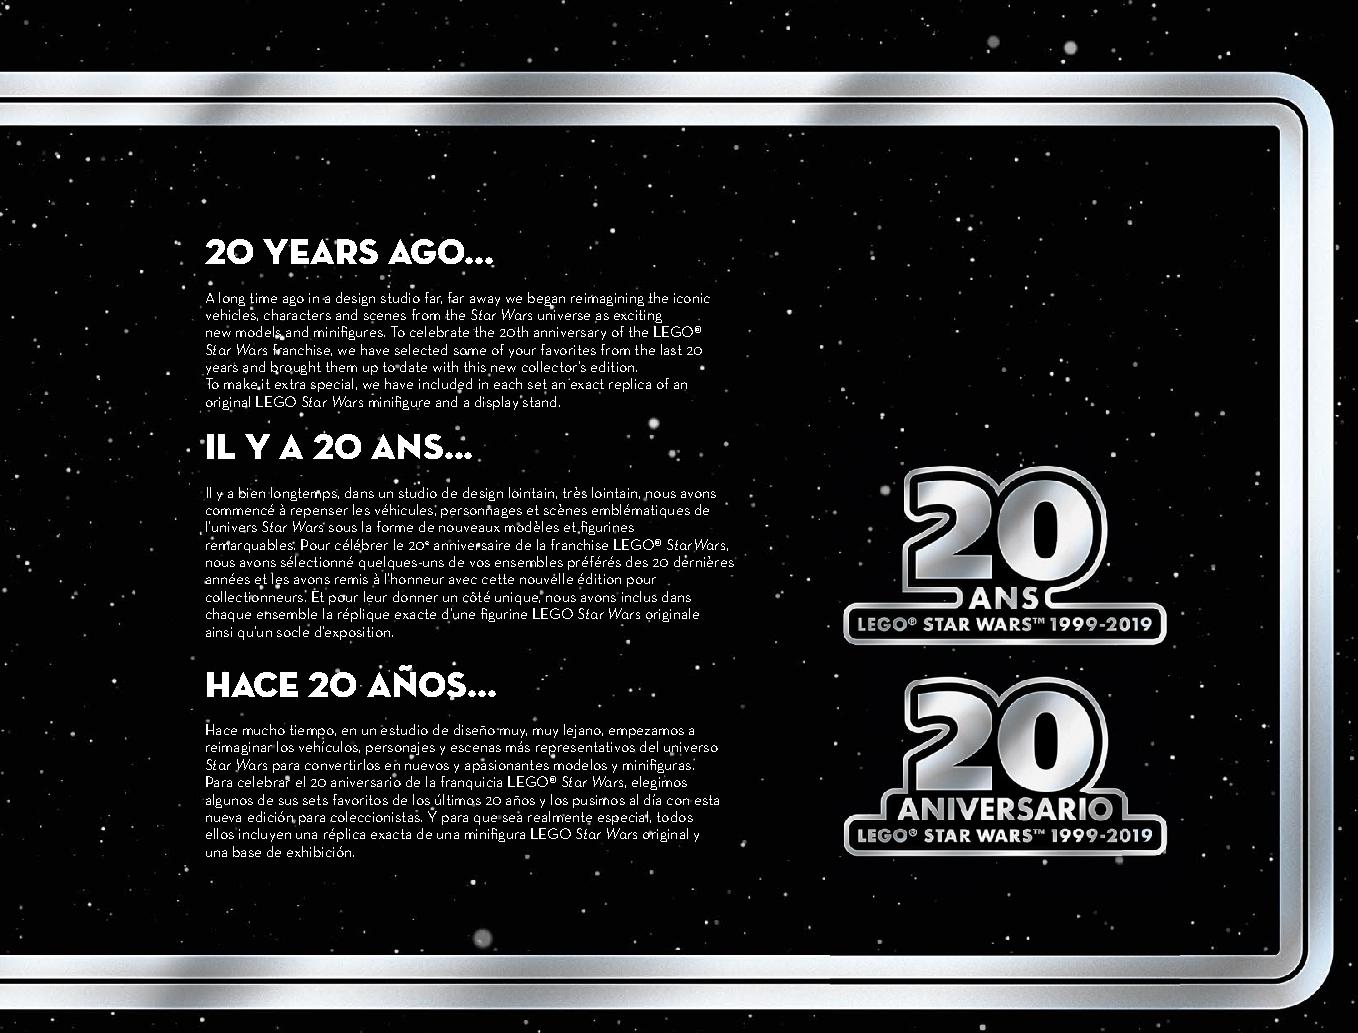 스타워즈 20주년 기념 - 슬레이브 l™ 75243 레고 세트 제품정보 레고 조립설명서 3 page